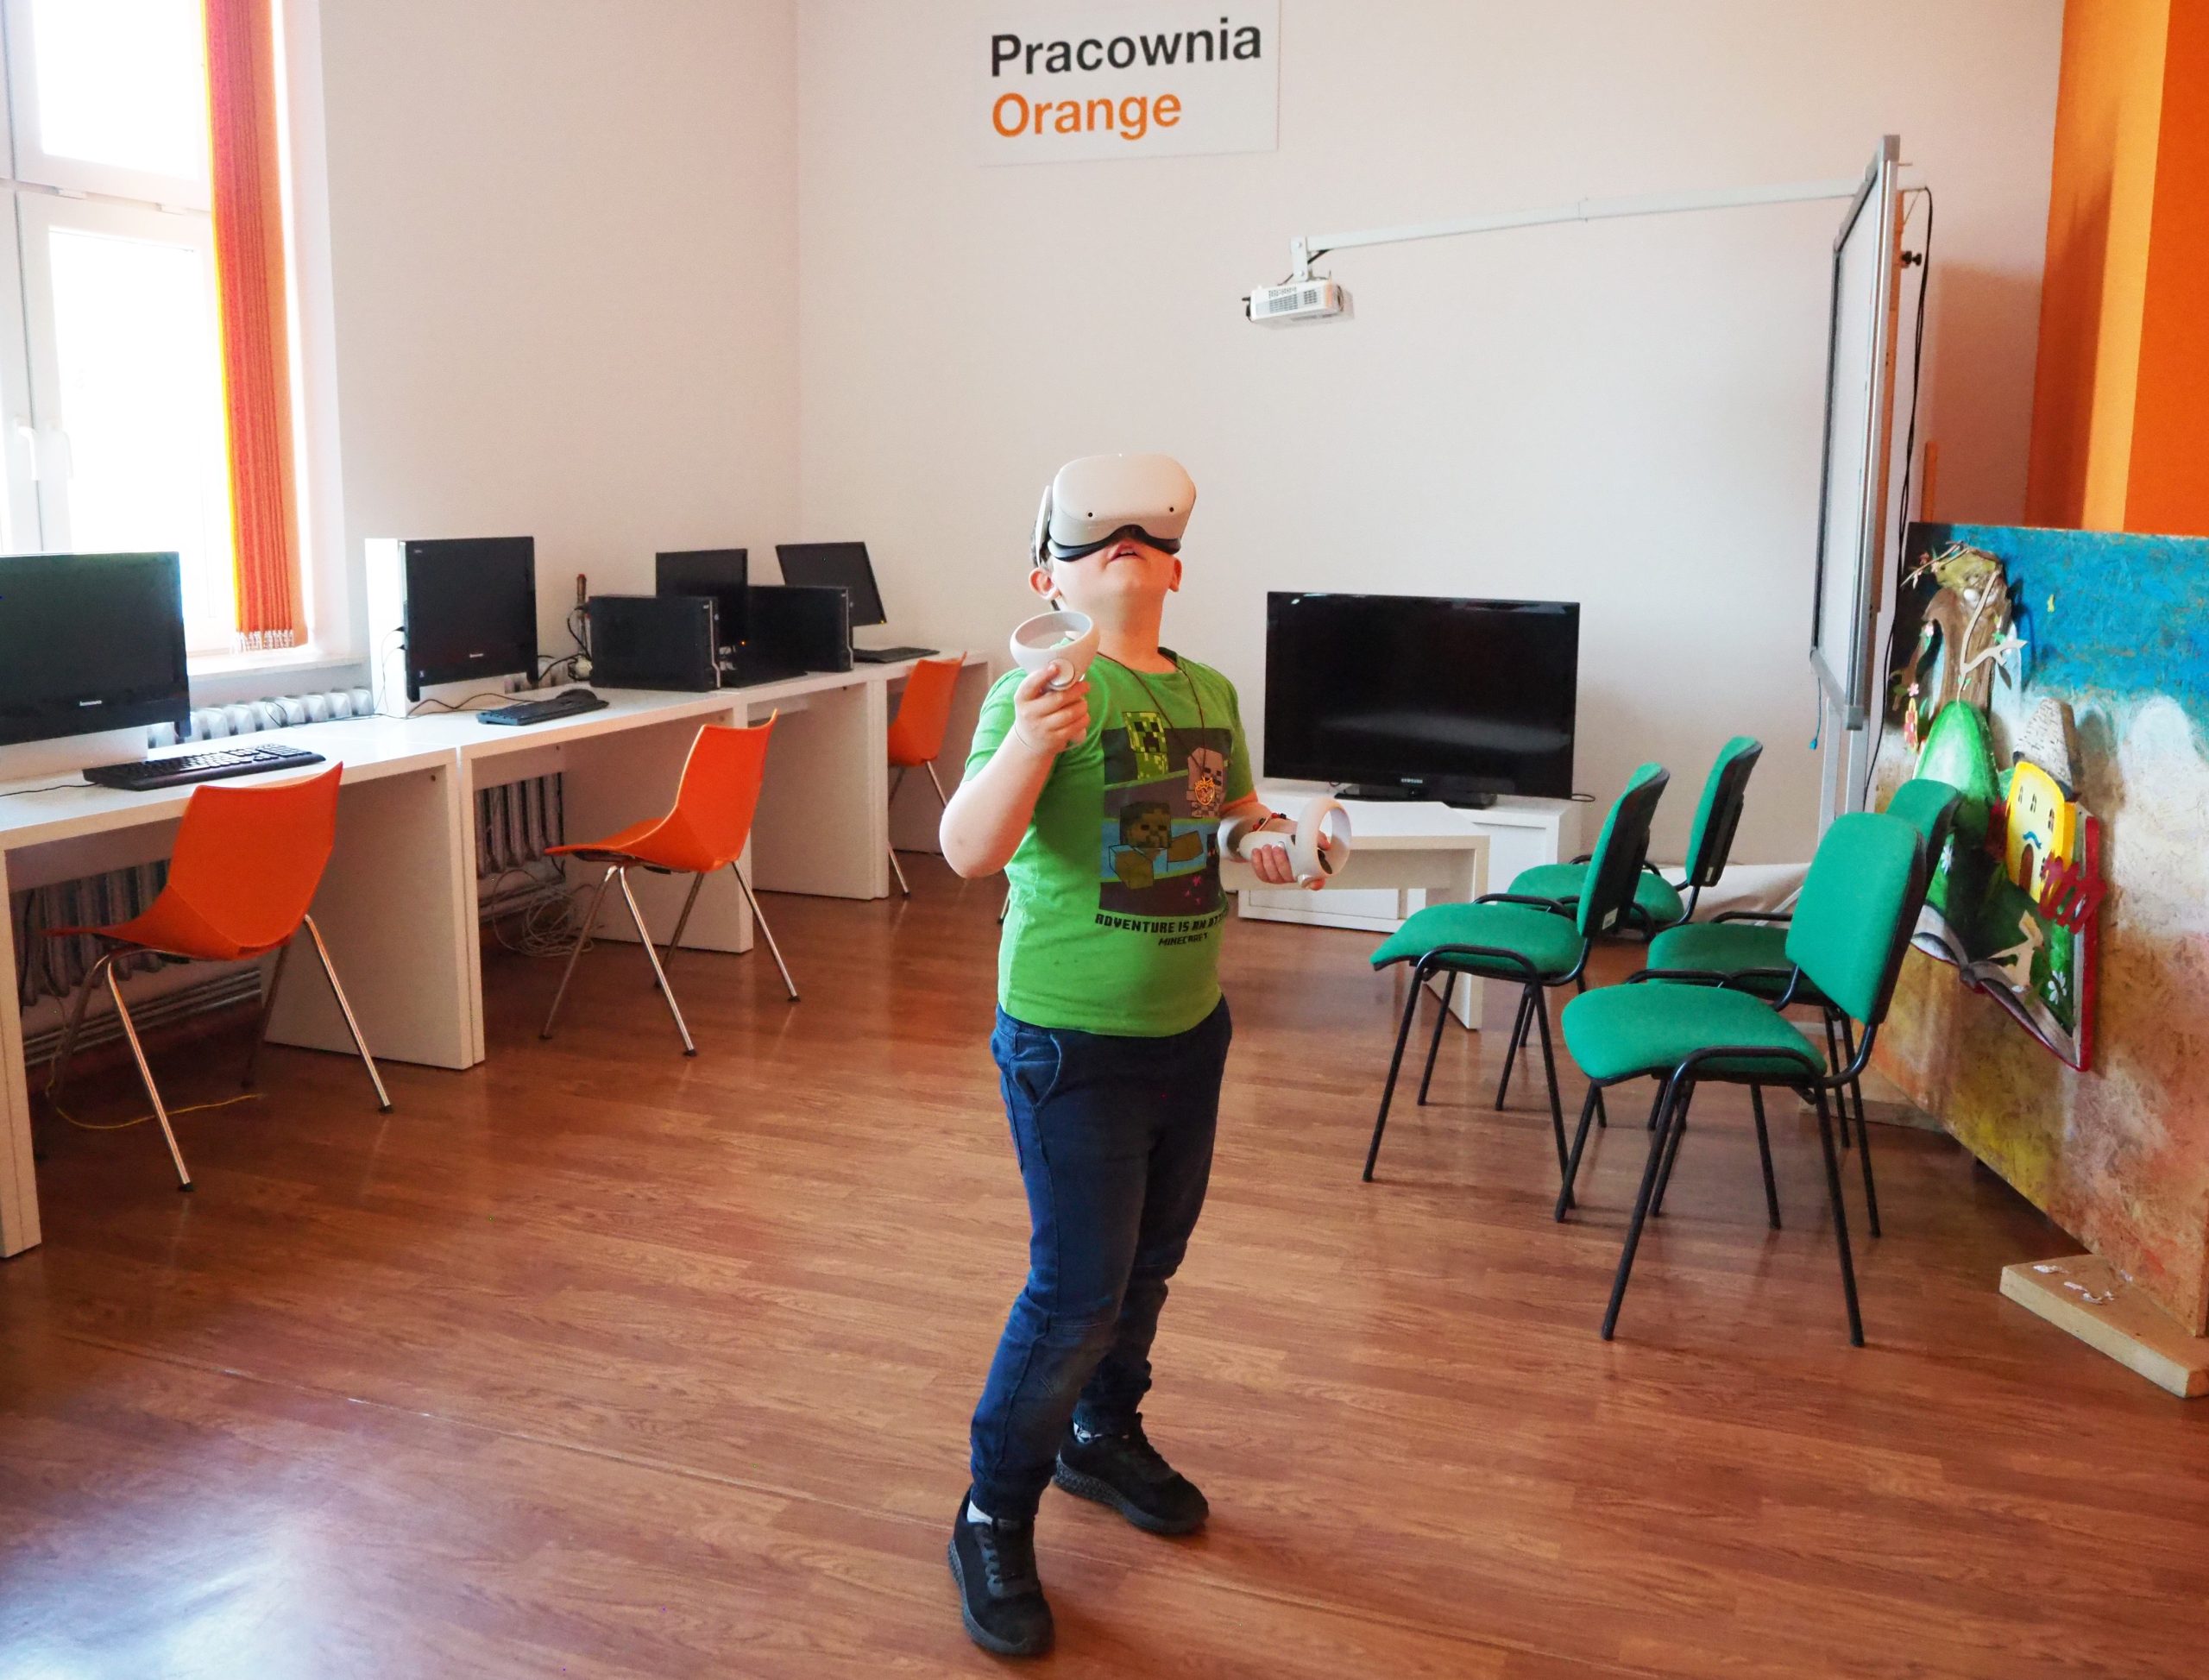 chłopiec w pracowni orange korzysta z okularów do wirtualnej rzeczywistości